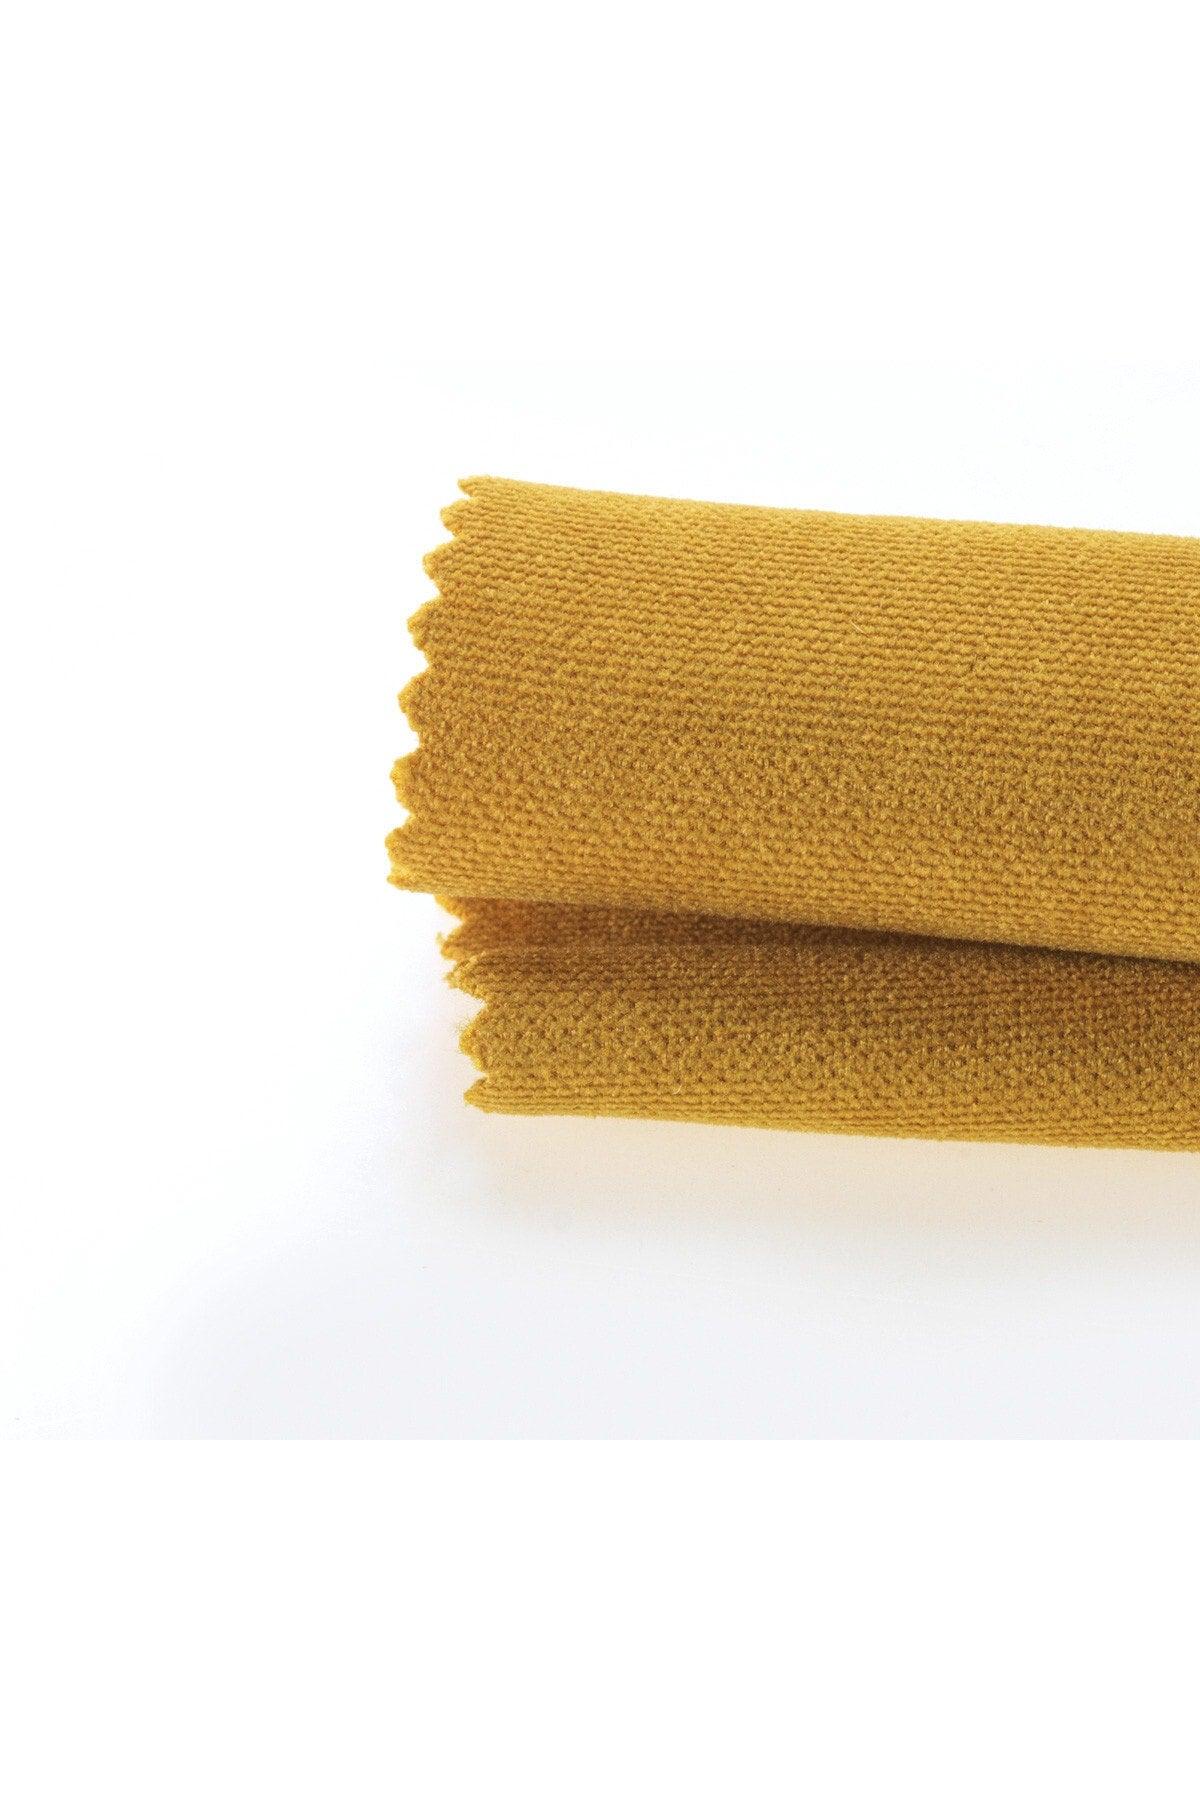 Velvet Textured Honeycomb Yellow Runner - Swordslife